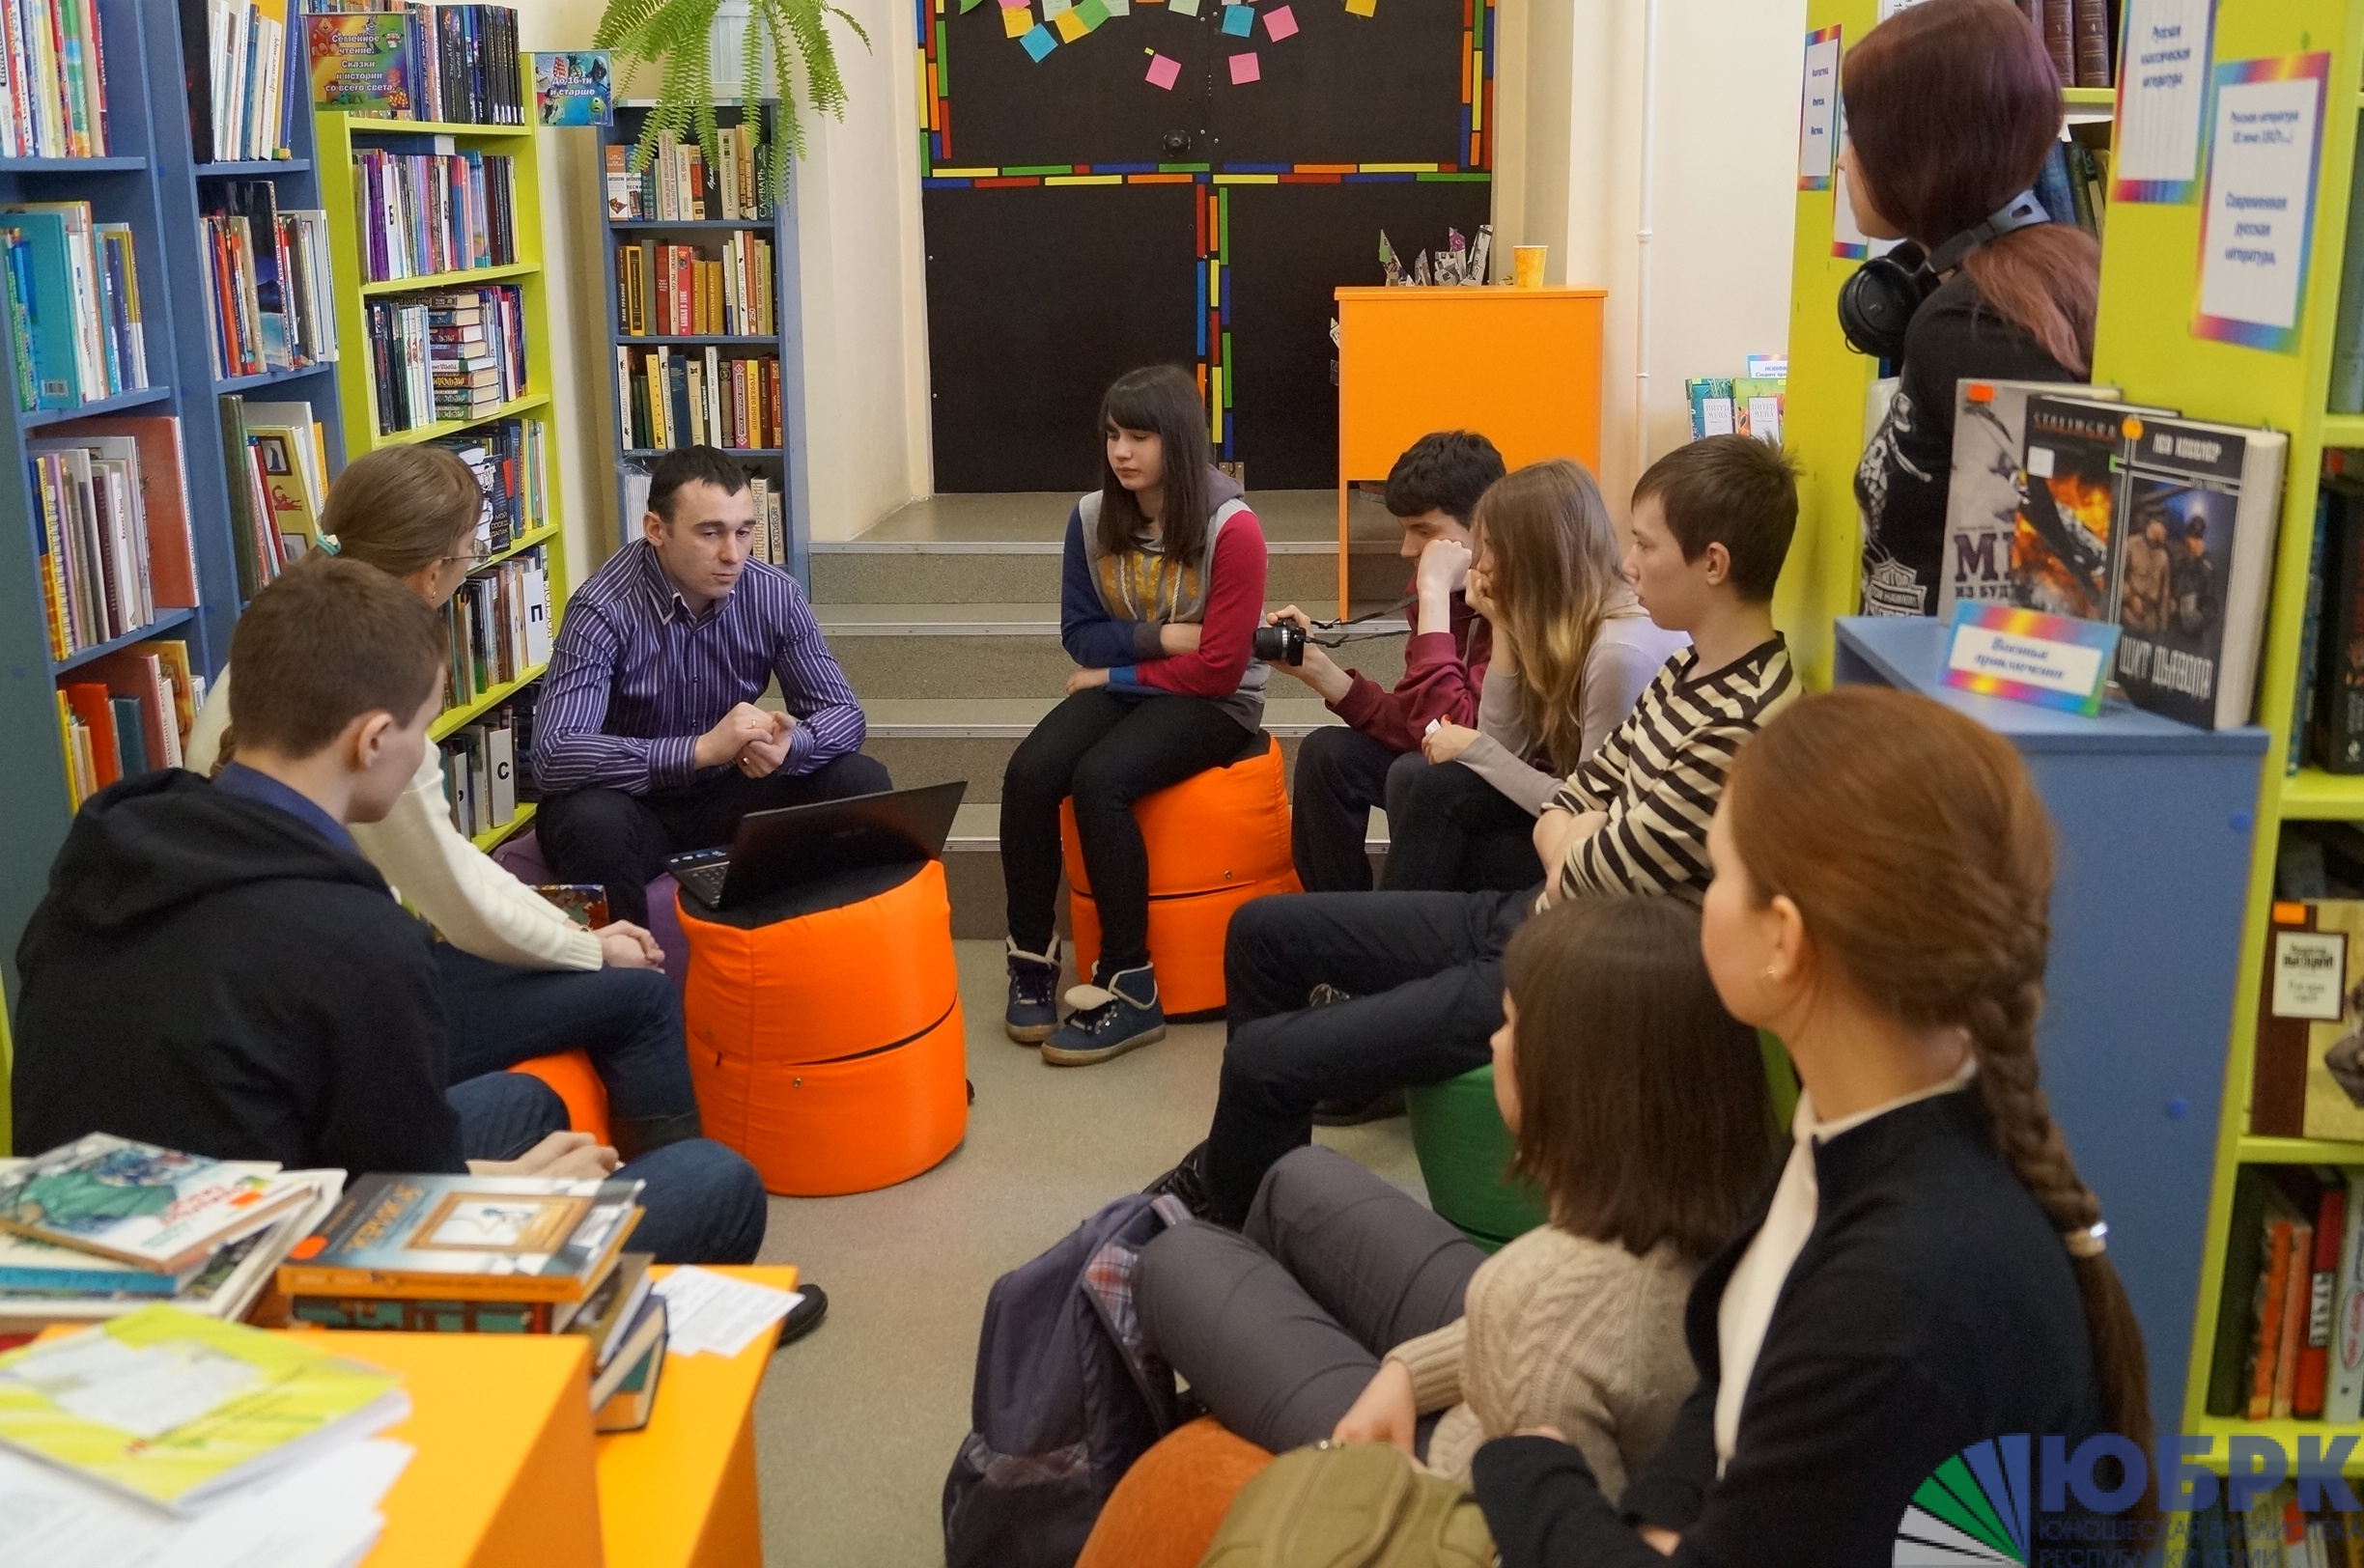 Библиотека творческая встреча. Читатели в библиотеке. Молодежная зона в библиотеке. Люди в библиотеке. Молодежный клуб в библиотеке.